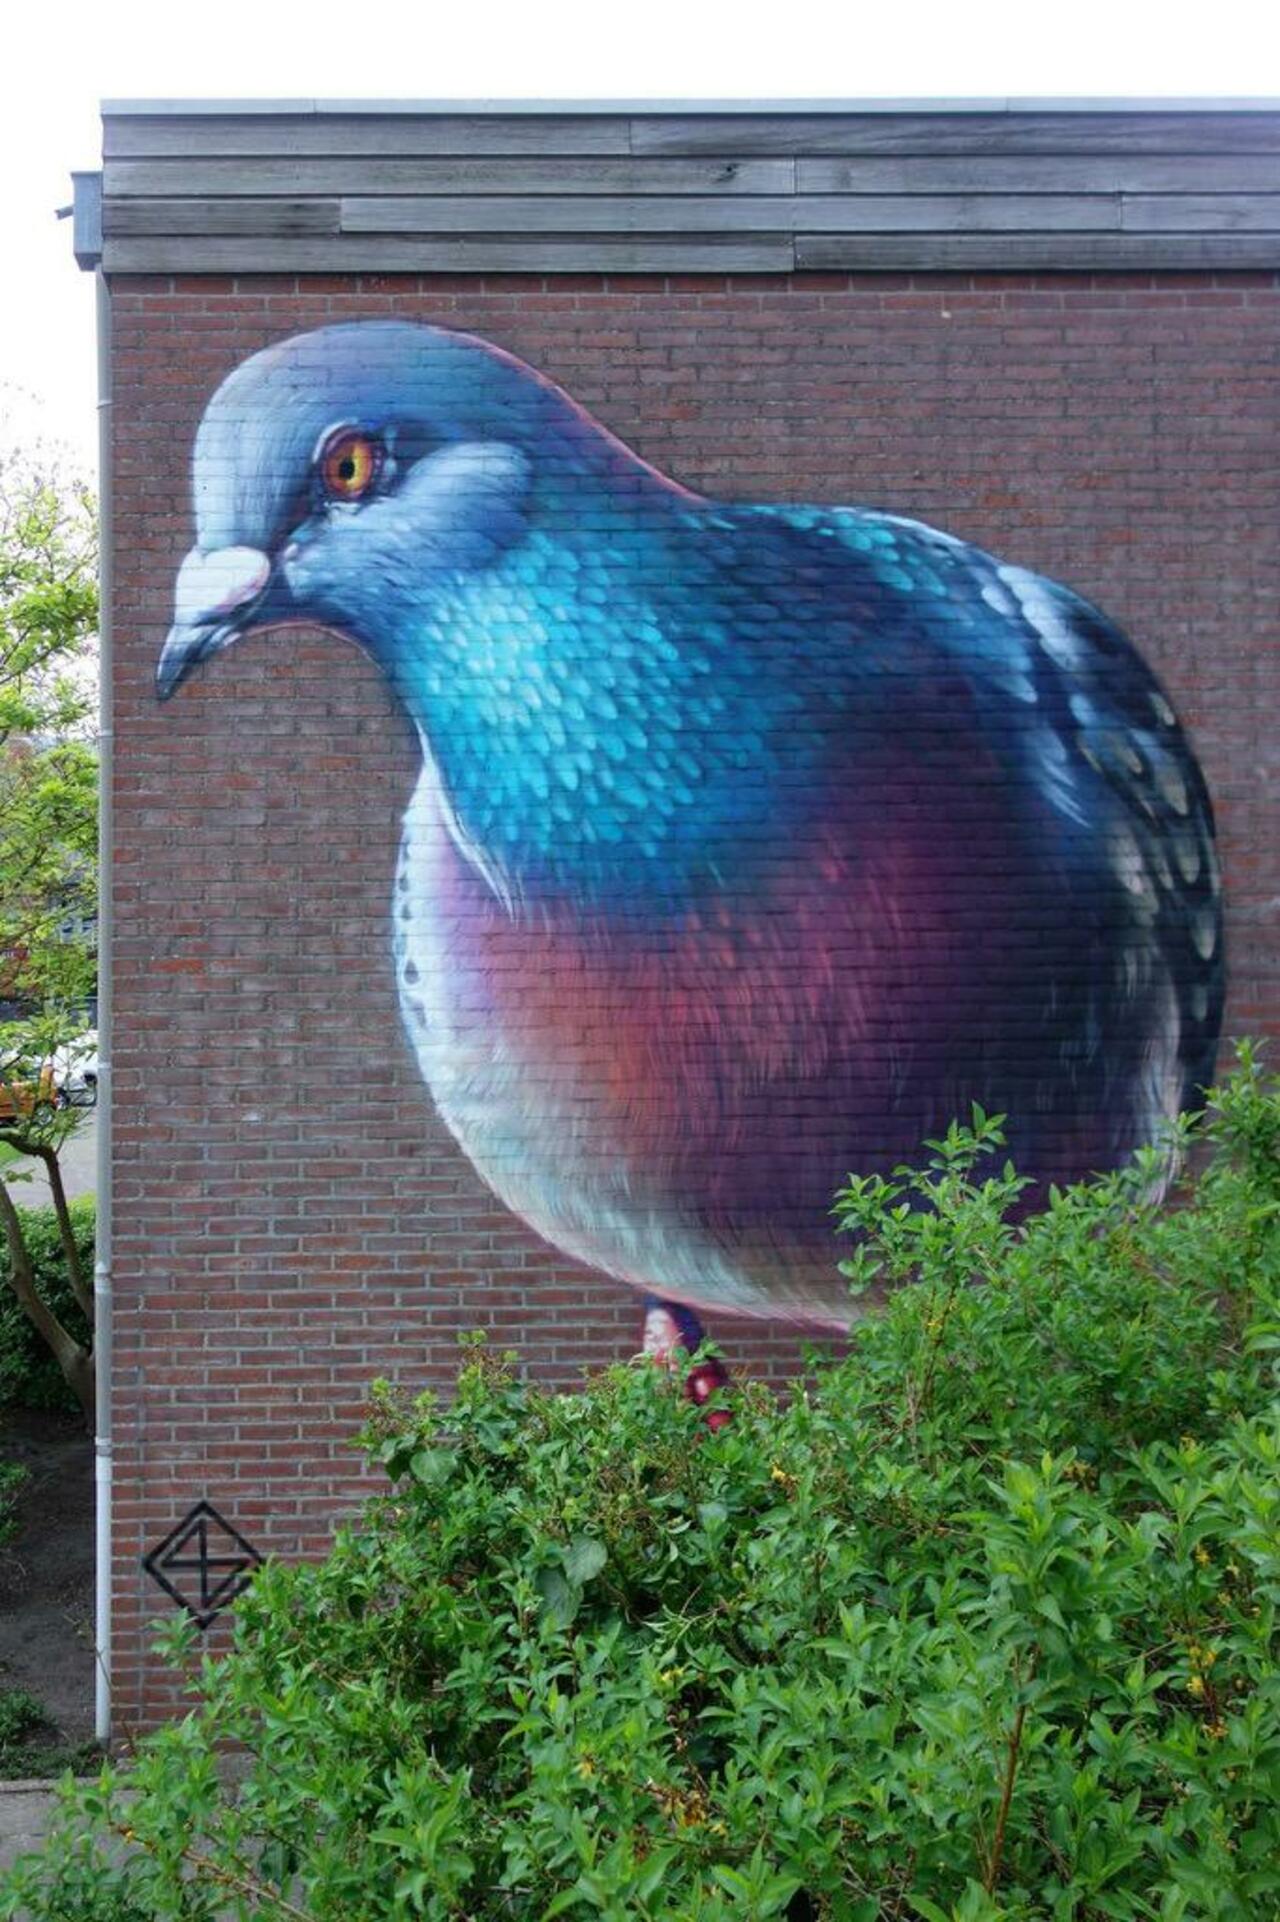 RT GoogleStreetArt: Street Art by Super A 

#art #graffiti #mural #streetart http://t.co/4dxsUvOoG8 https://goo.gl/7kifqw